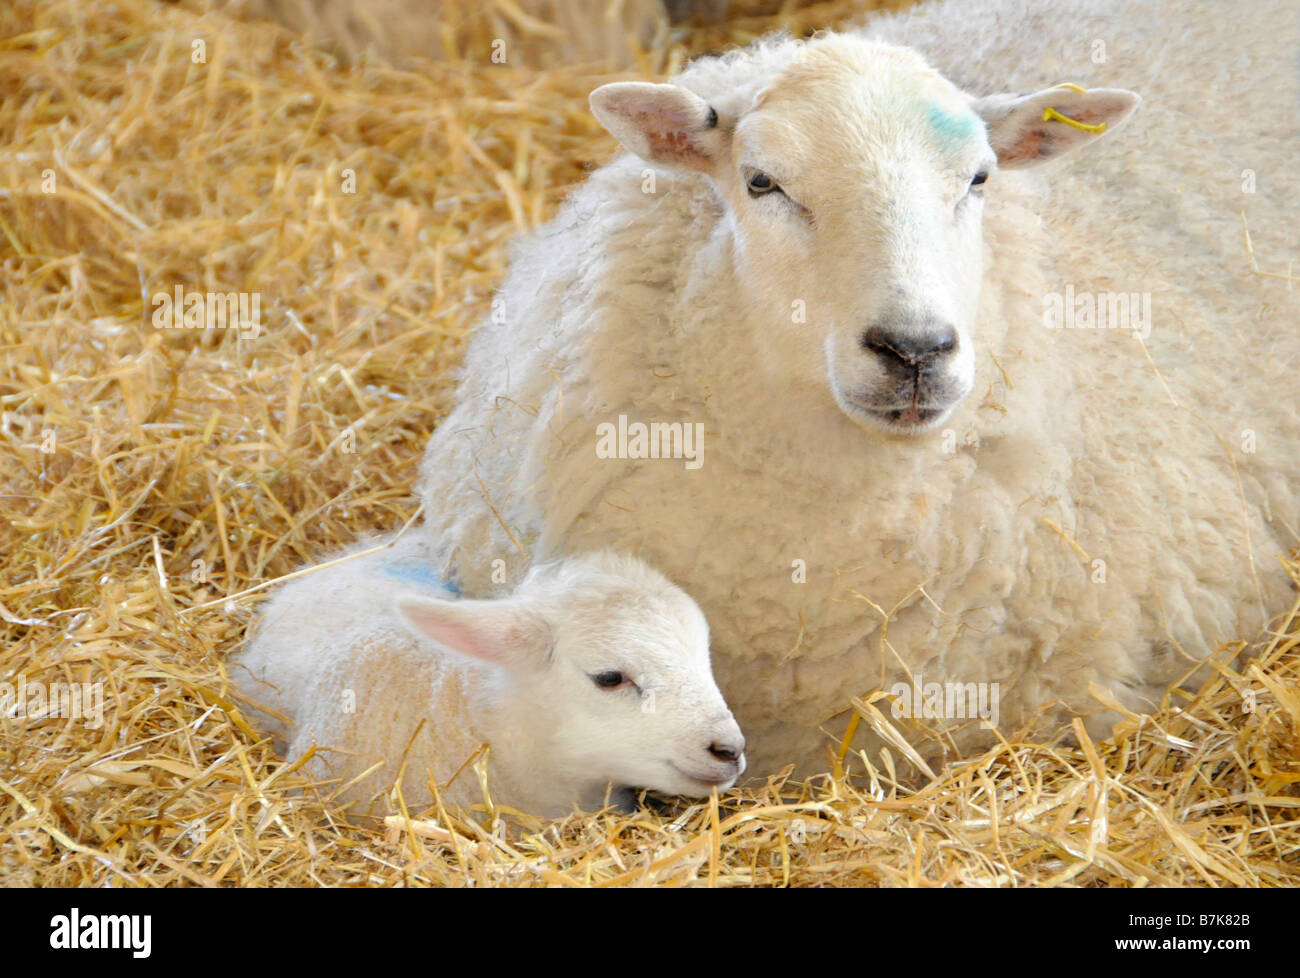 Ewe and her newborn, Surrey, UK Stock Photo